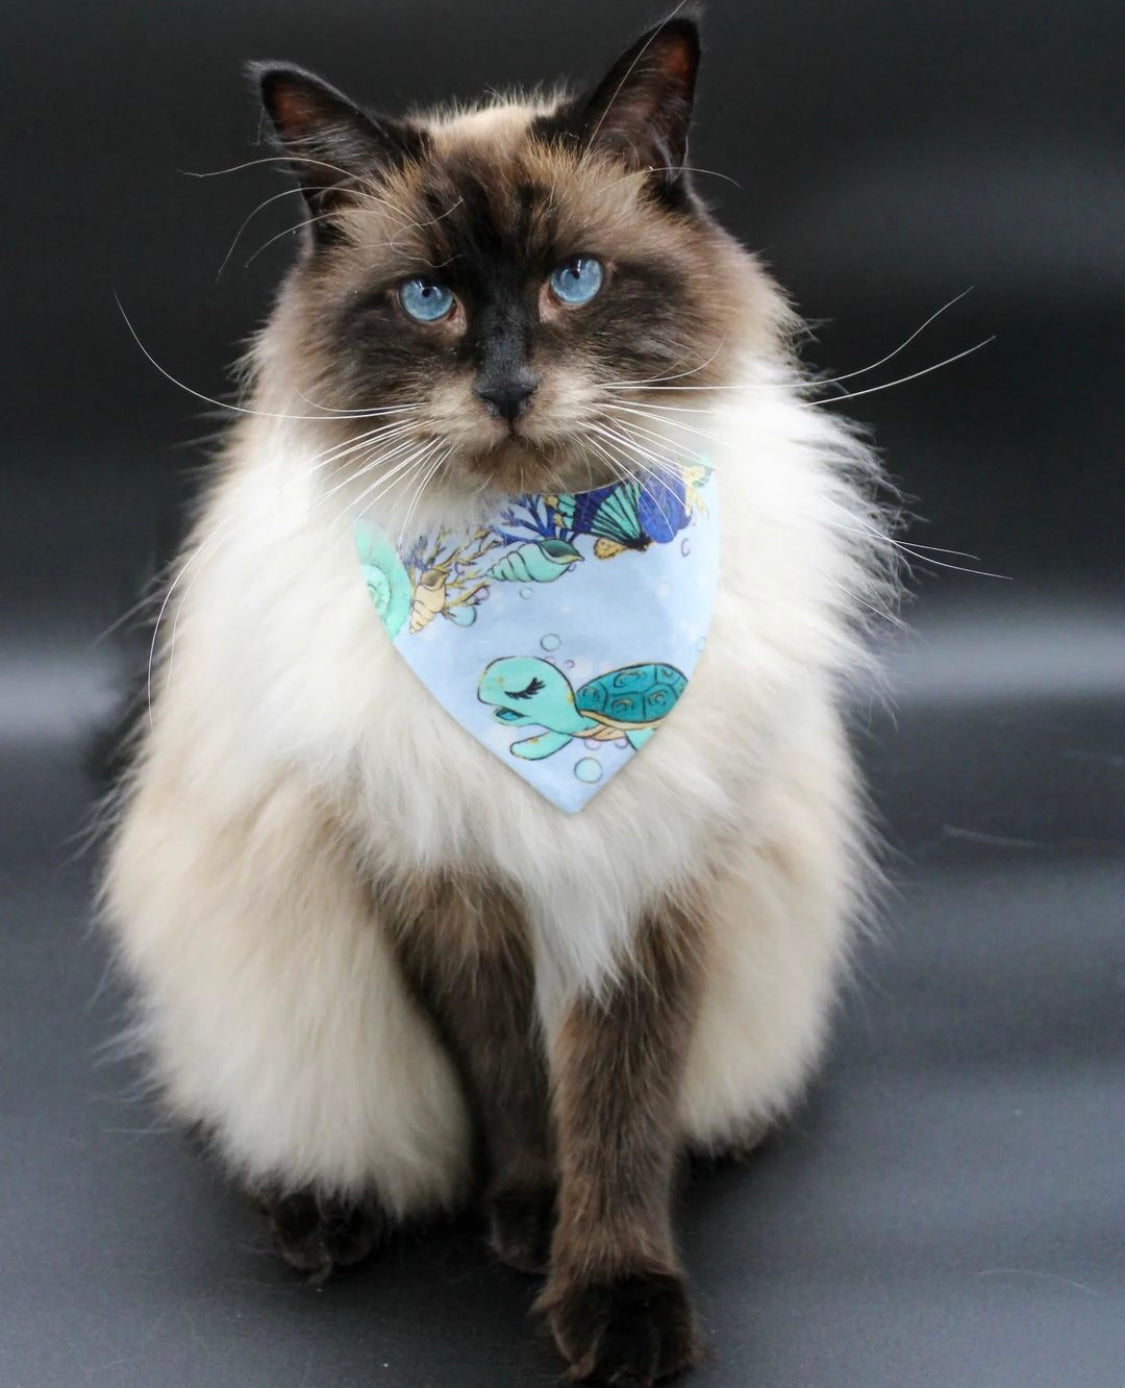 Flauschige Katze trägt hellblaues Katzenhalstuch mit Muscheln und Schildkröte beim Fotoshooting